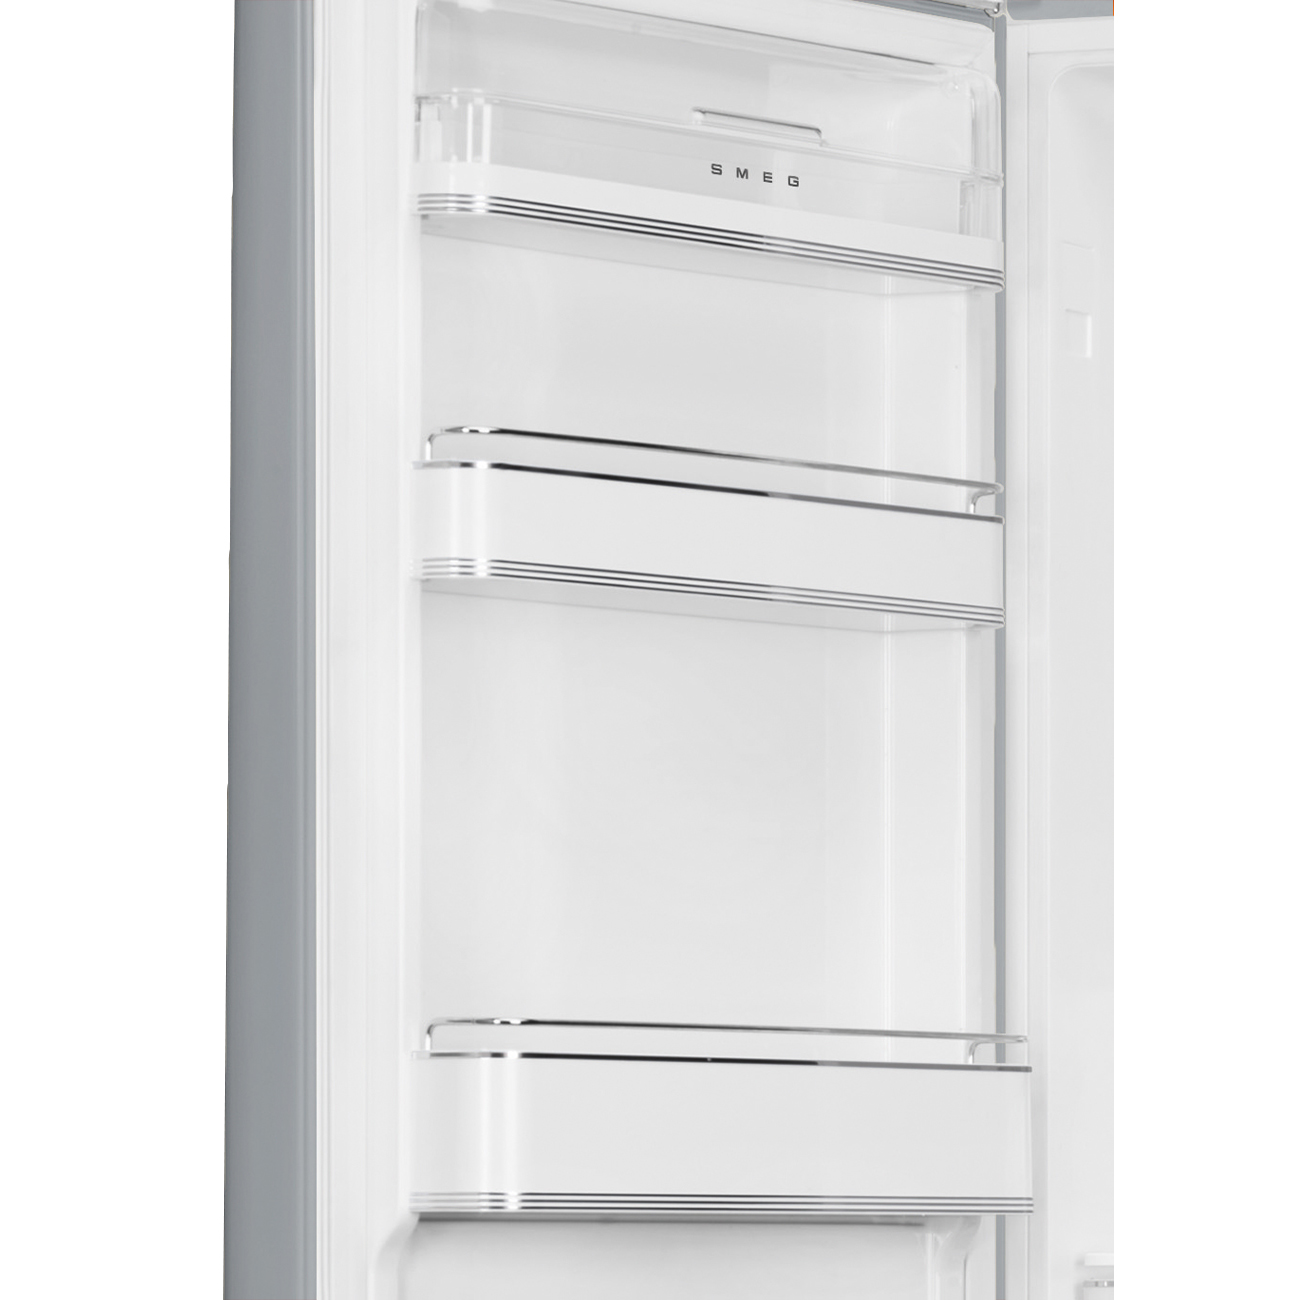 Silver refrigerator - Smeg_2